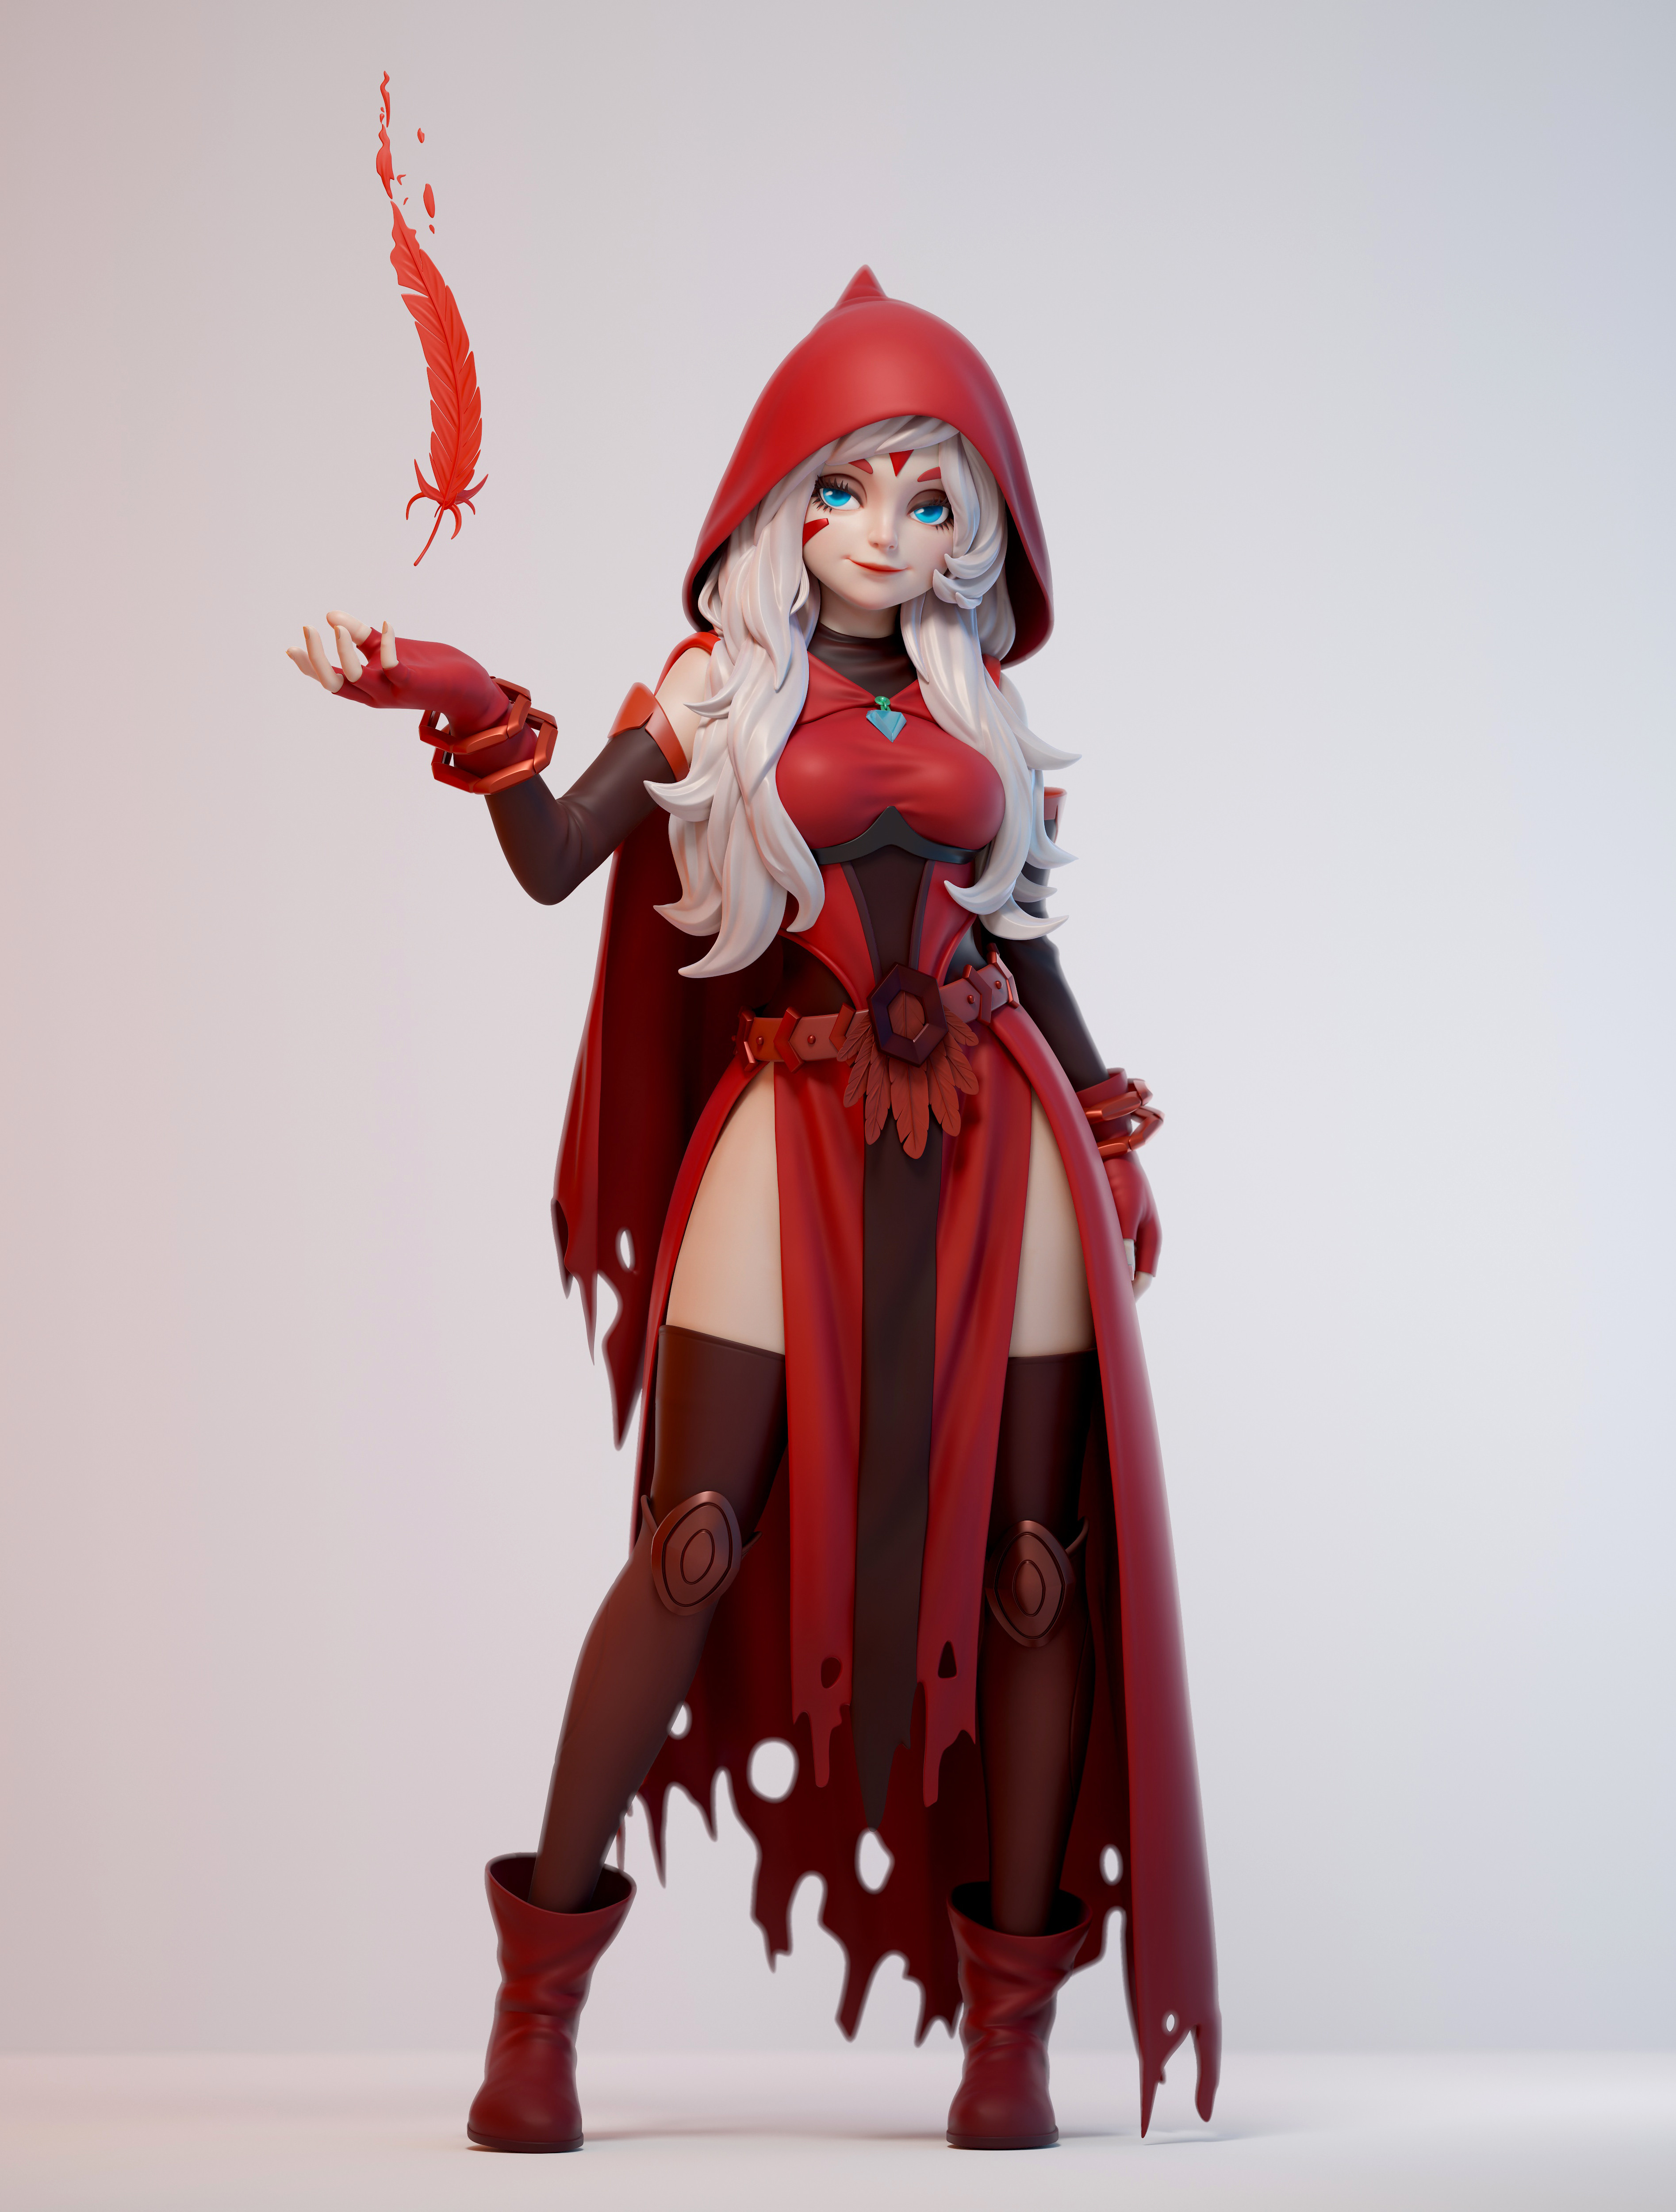 Anime Anime Girls ArtStation Fantasy Art Fantasy Girl Simple Background Long Hair Hoods Red Clothing 3789x5000